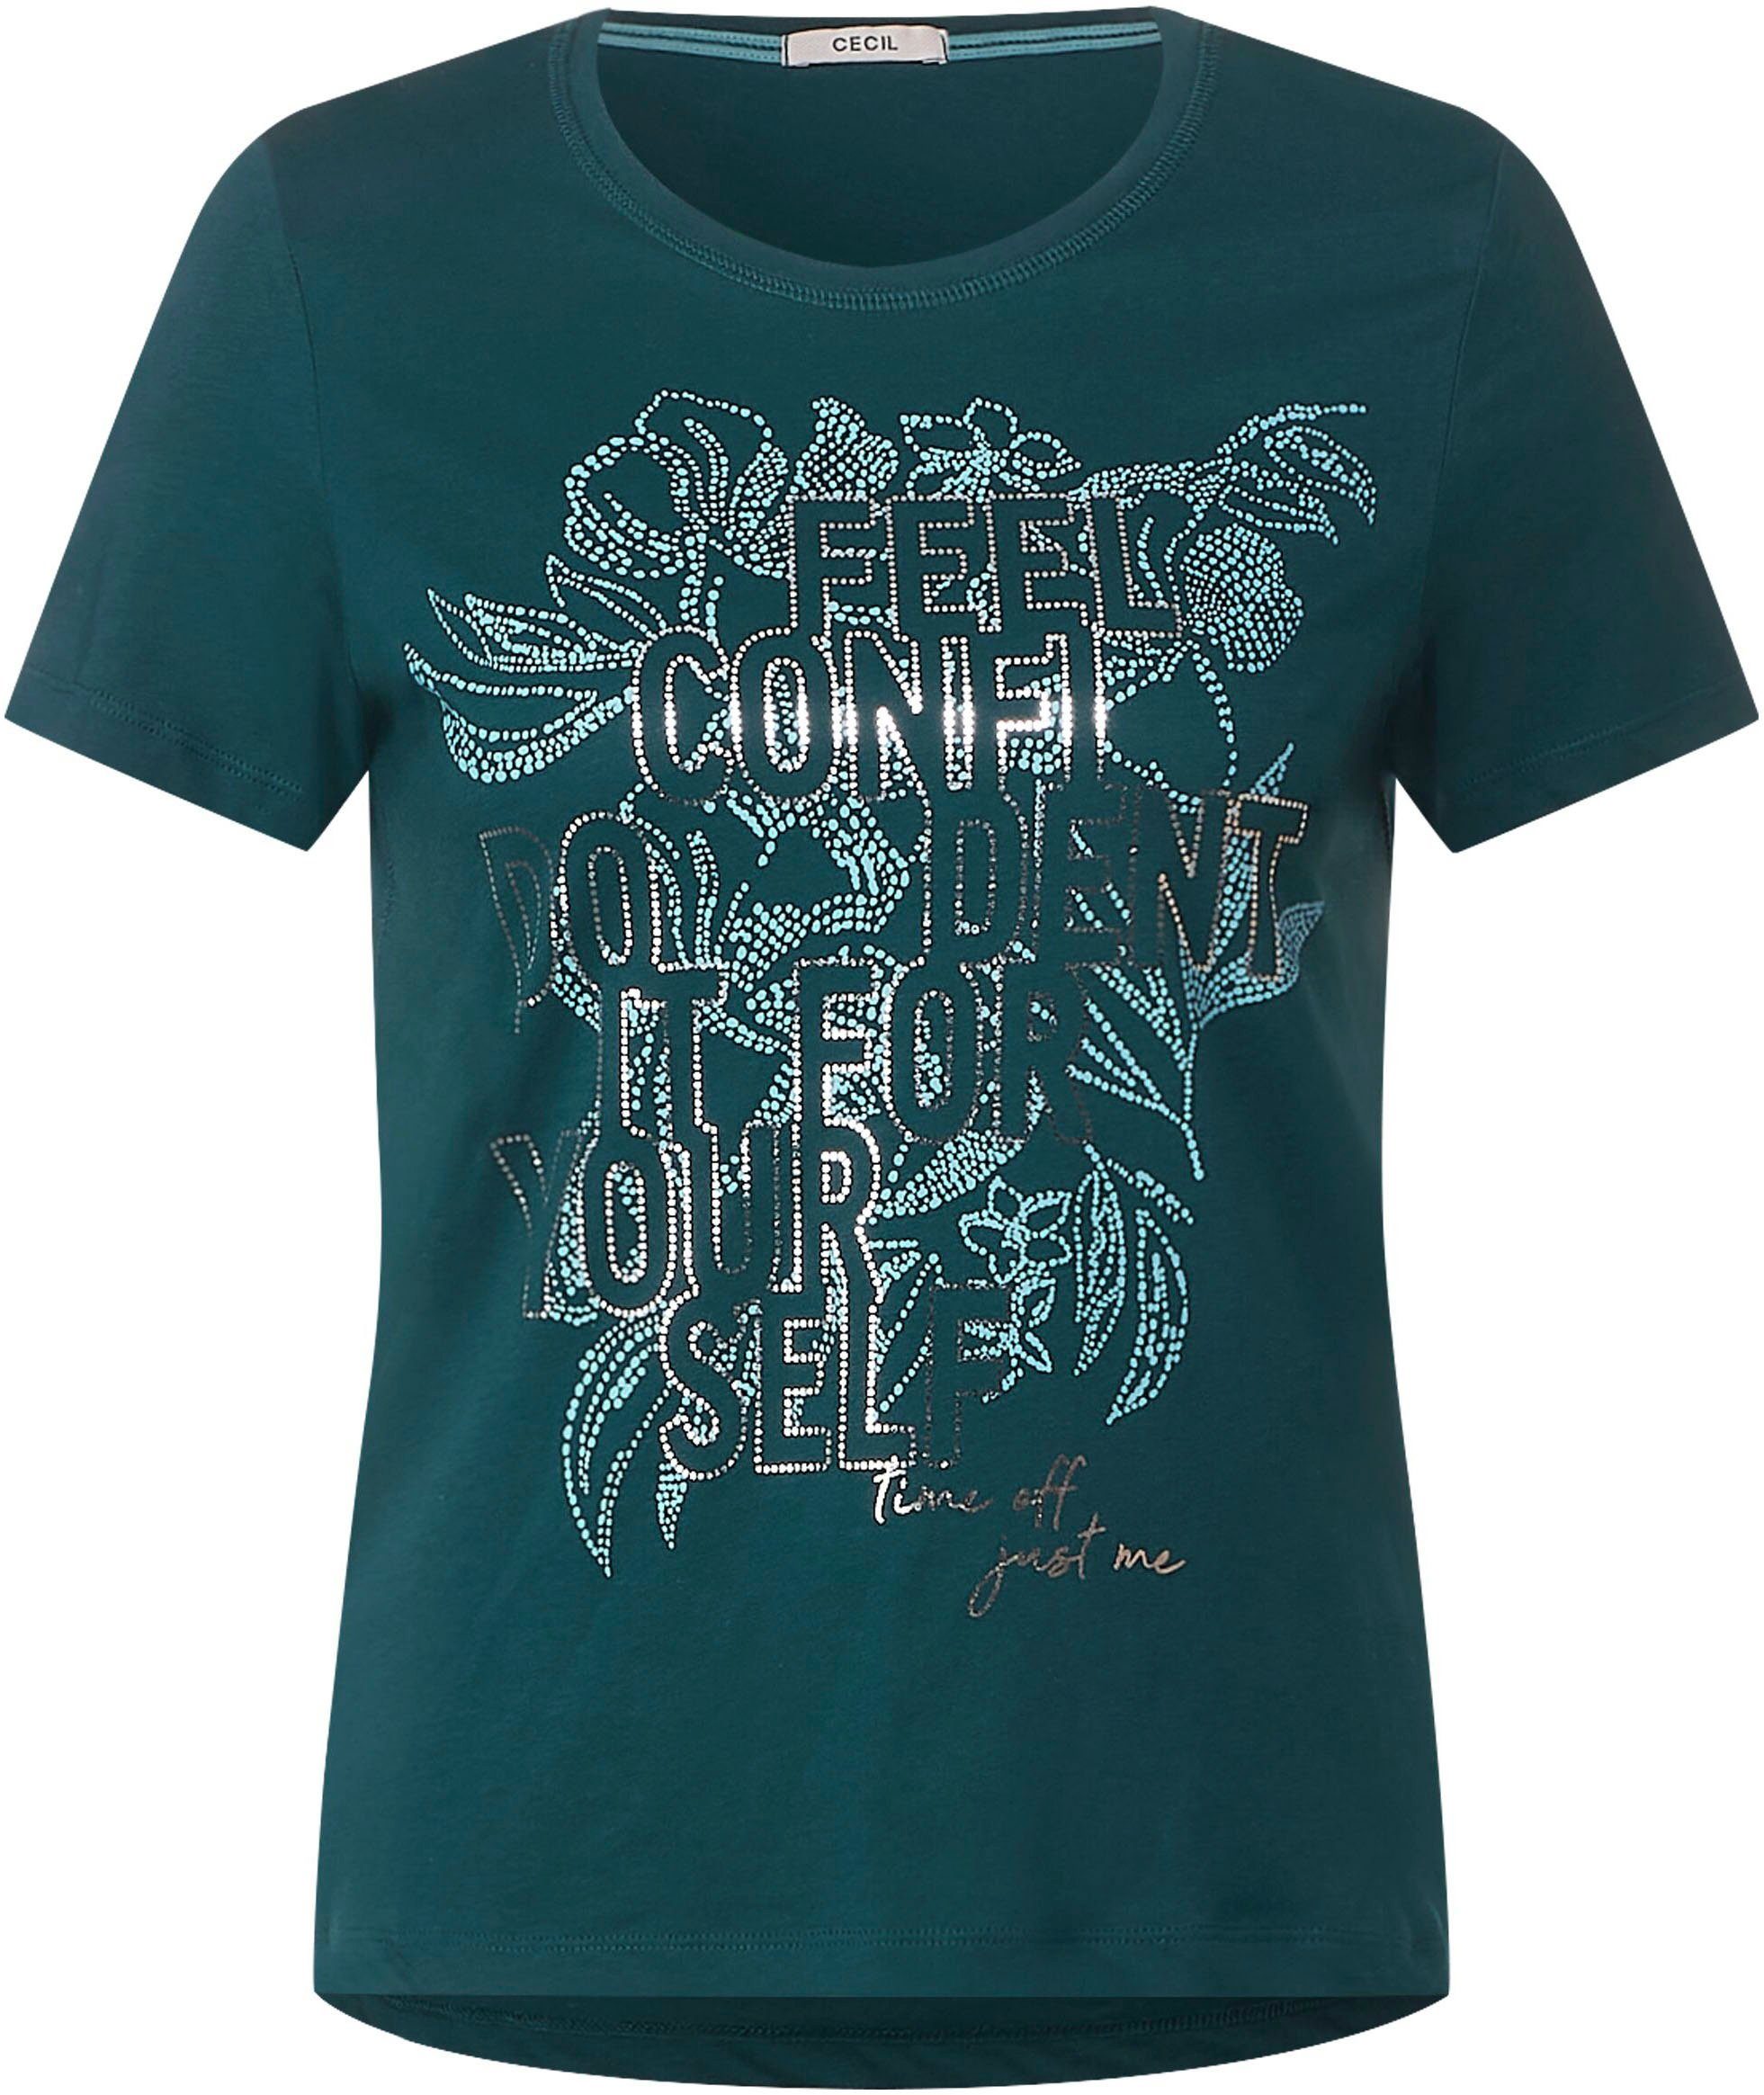 Cecil T-Shirt deep lake Steinchendetails mit green